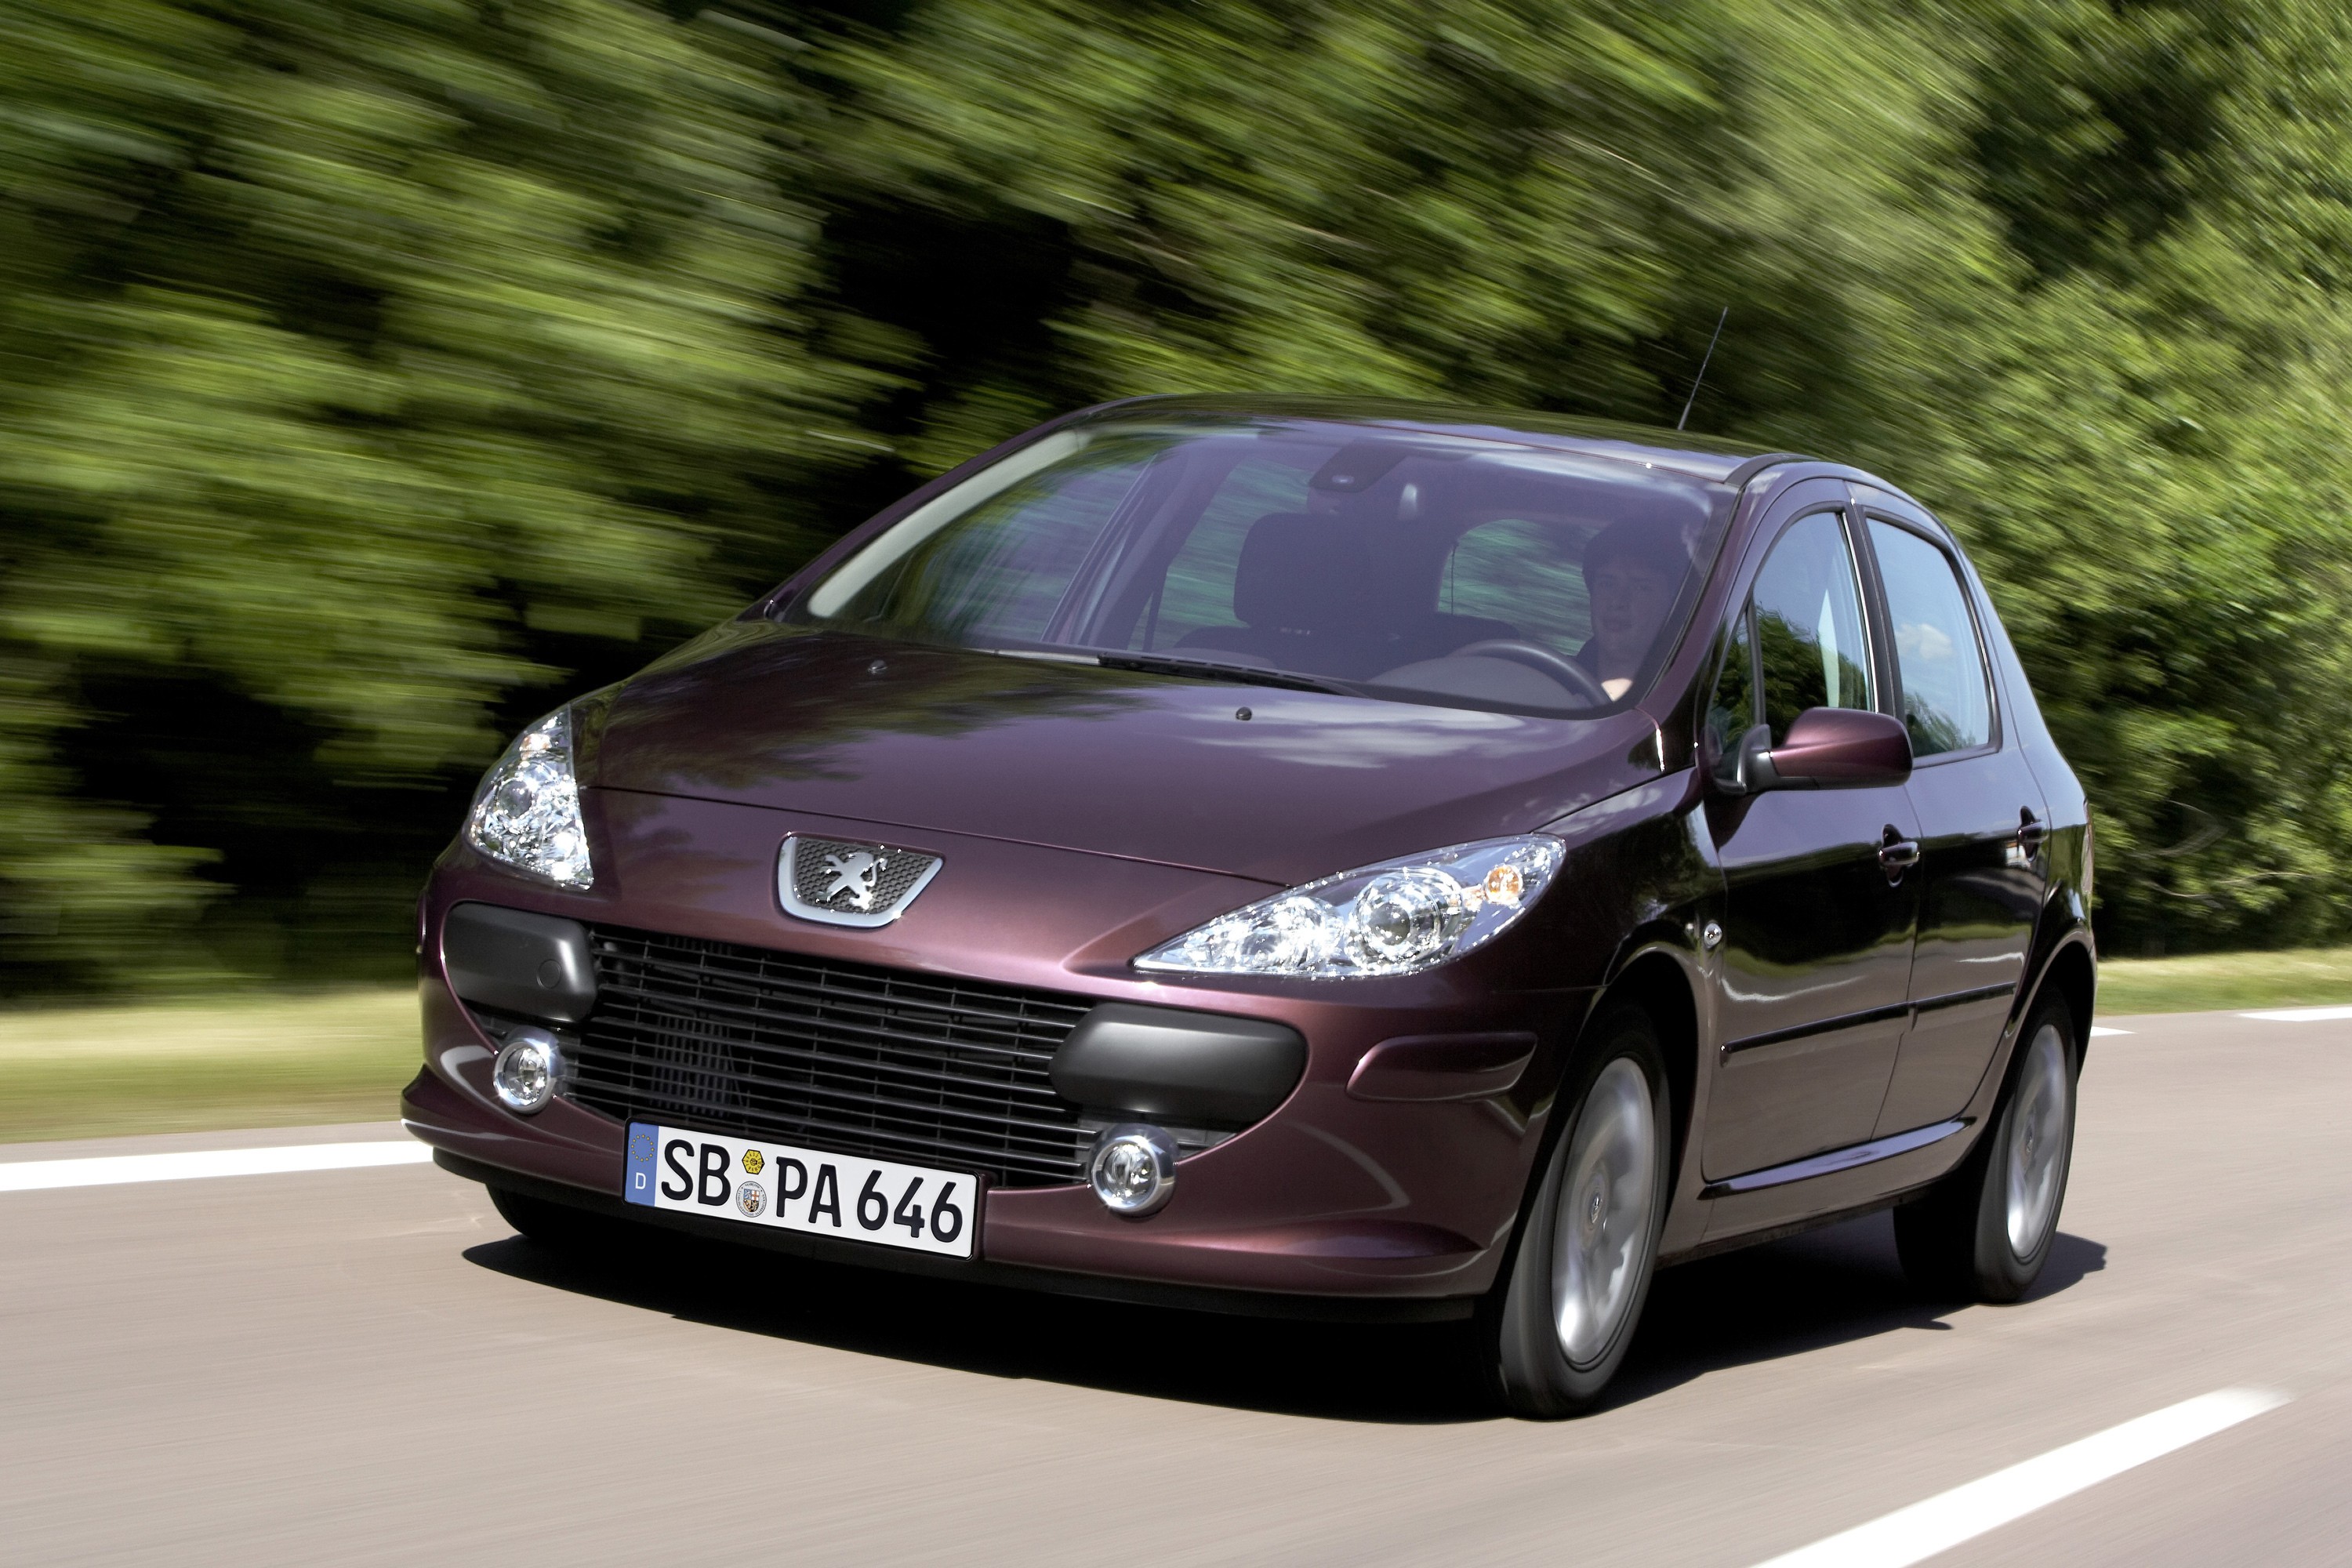 🏁 Peugeot 307 1.6 XR 5P 2008 🏁 🔘Excelente estado